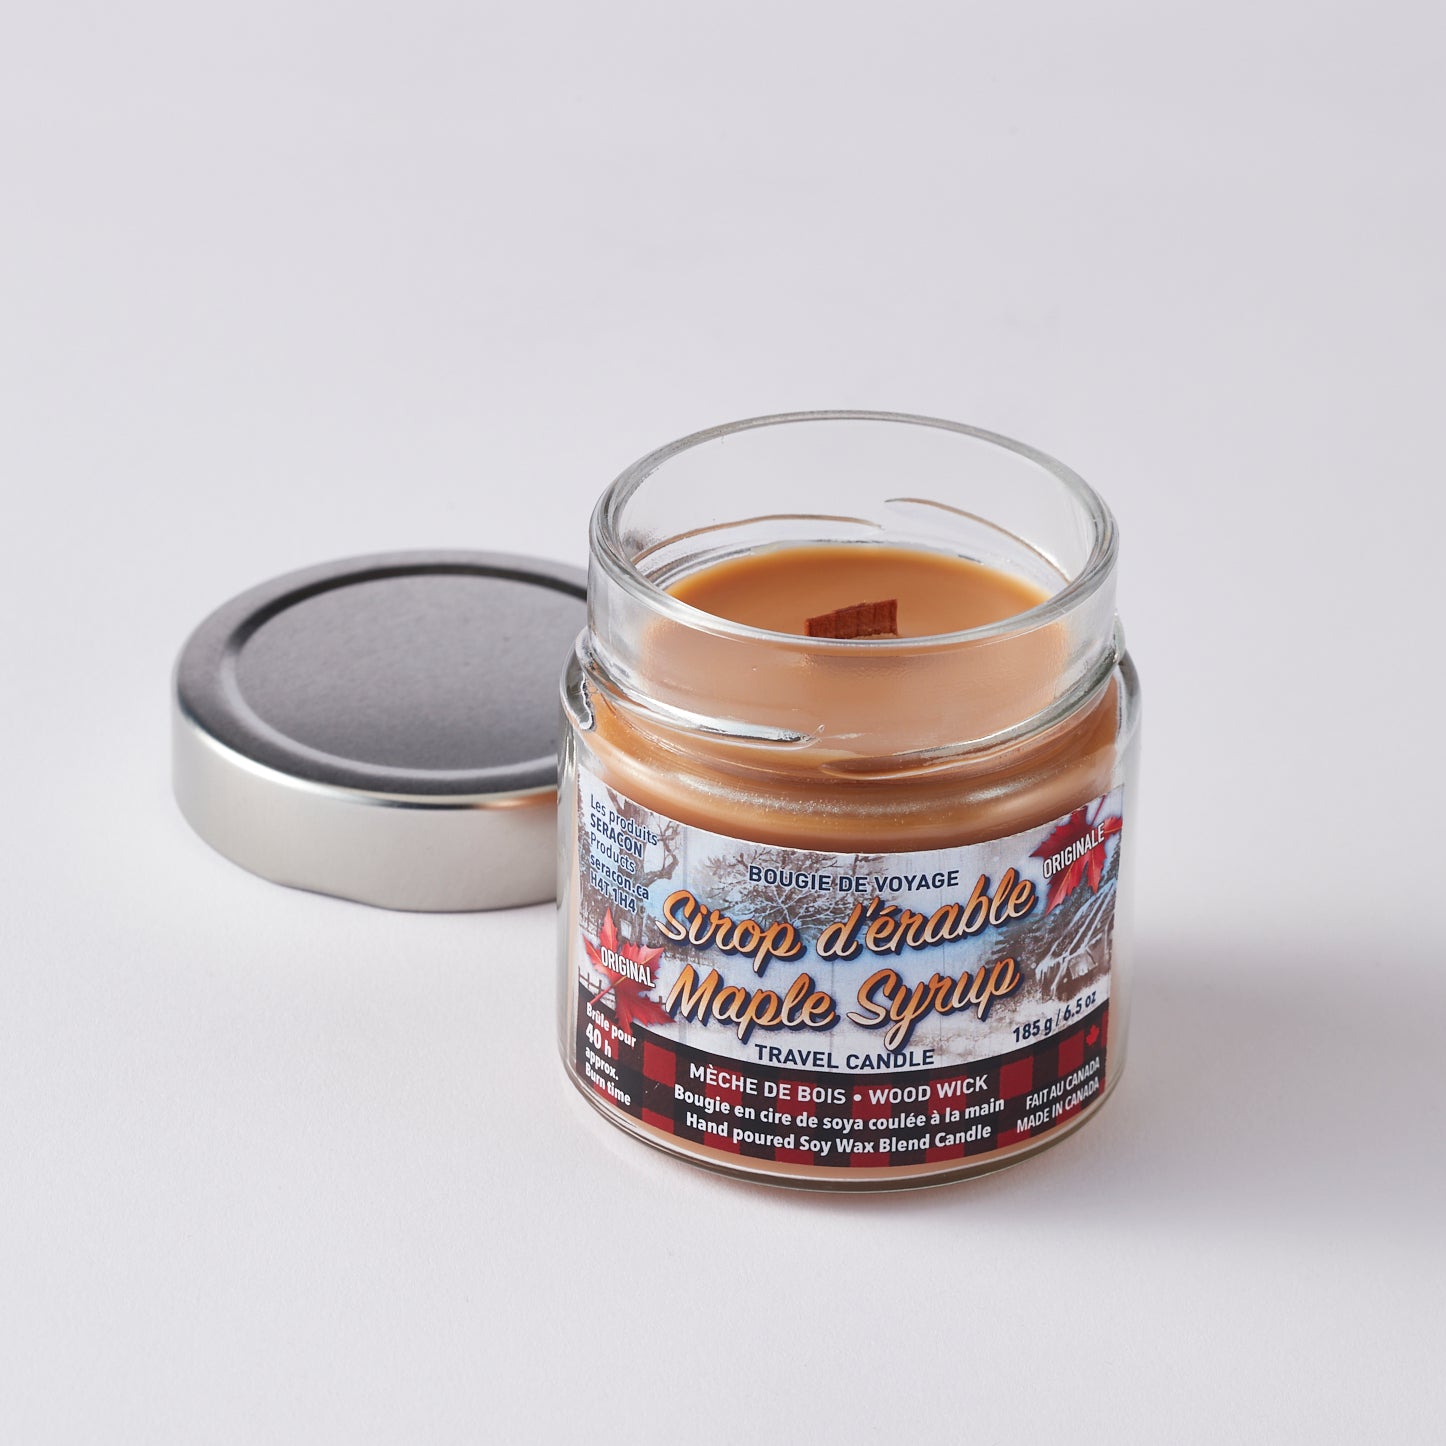 Maple Syrup Candle - Mason Jar